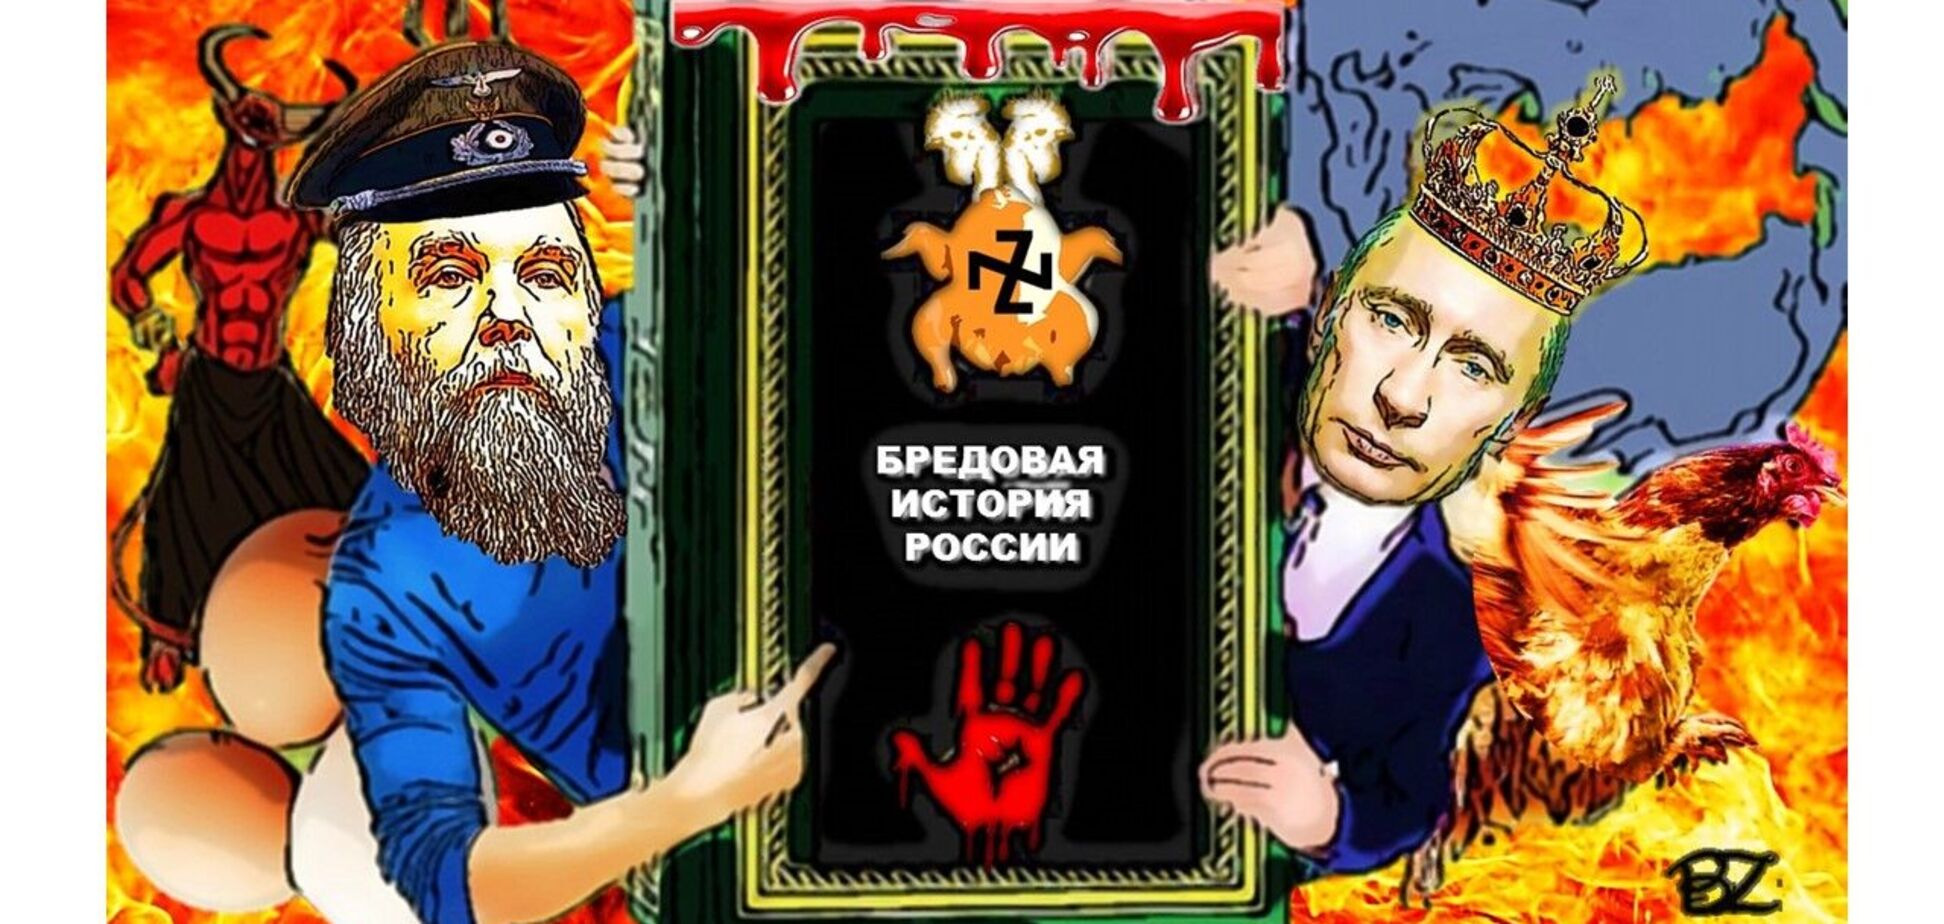 'Курка' i 'яйце' російського фашизму: чи пов'язані демагогія Дугіна та одержимість Путіна?